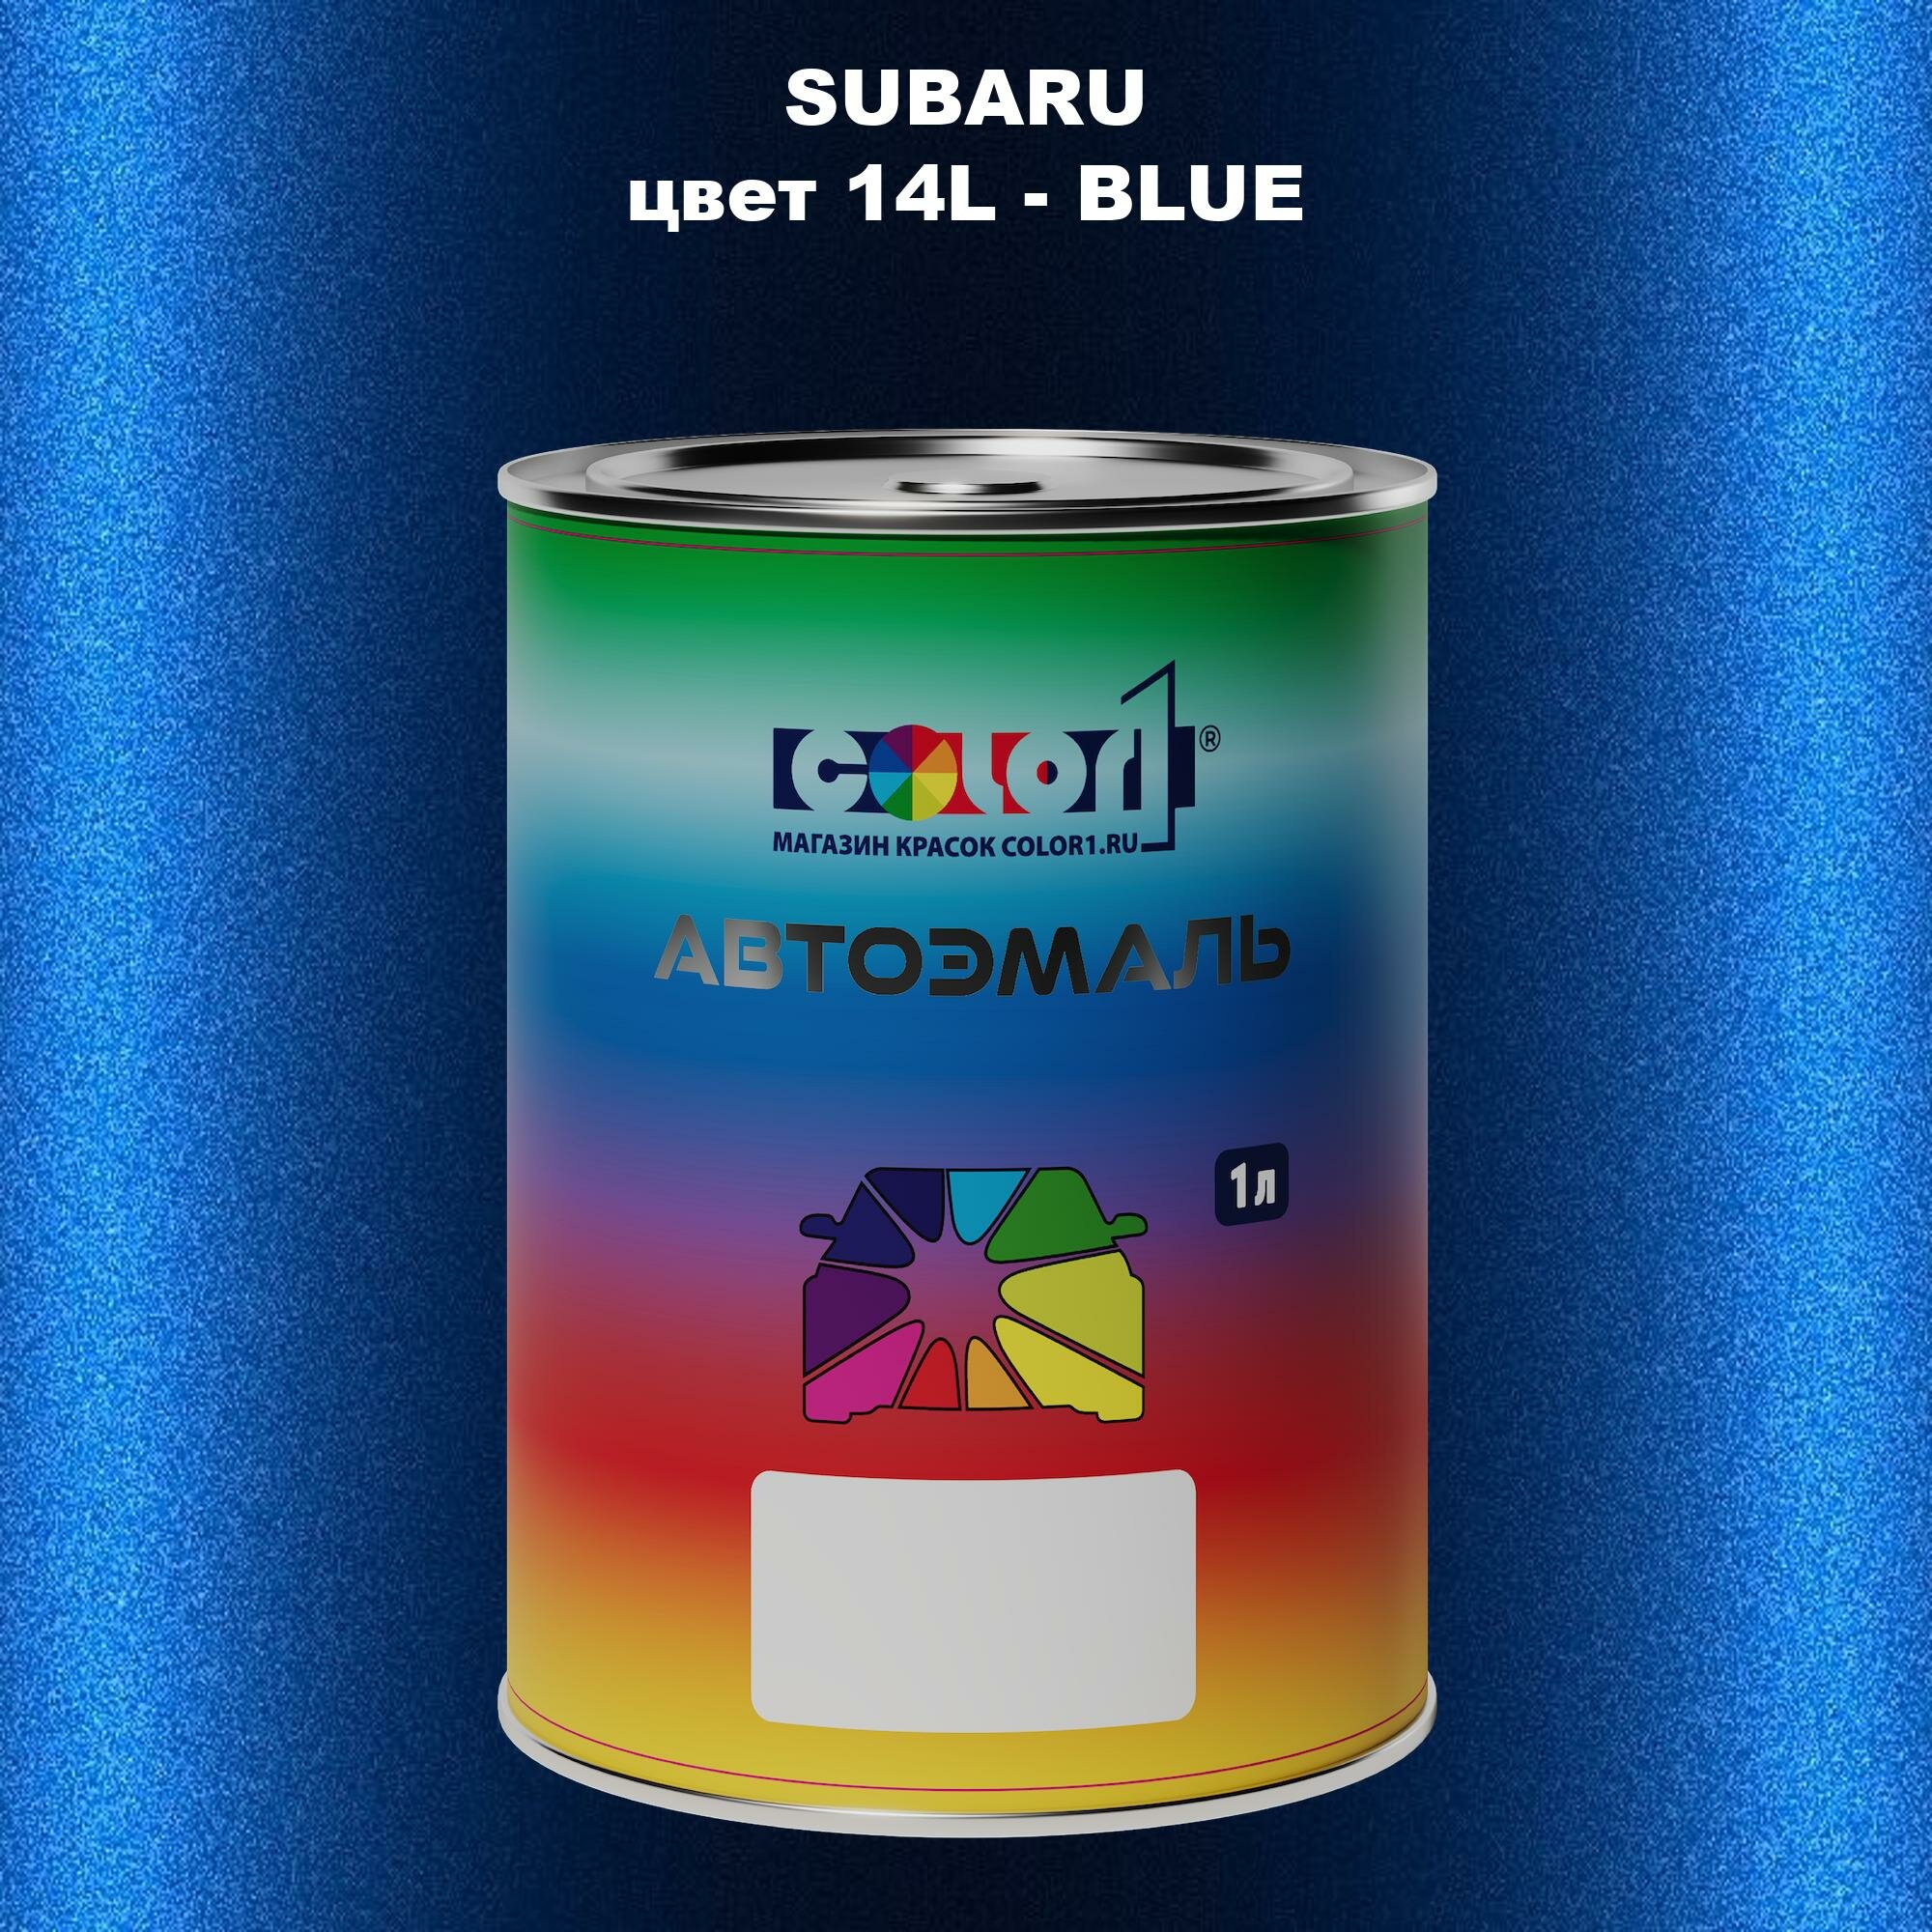 Автомобильная краска COLOR1 для SUBARU, цвет 14L - BLUE